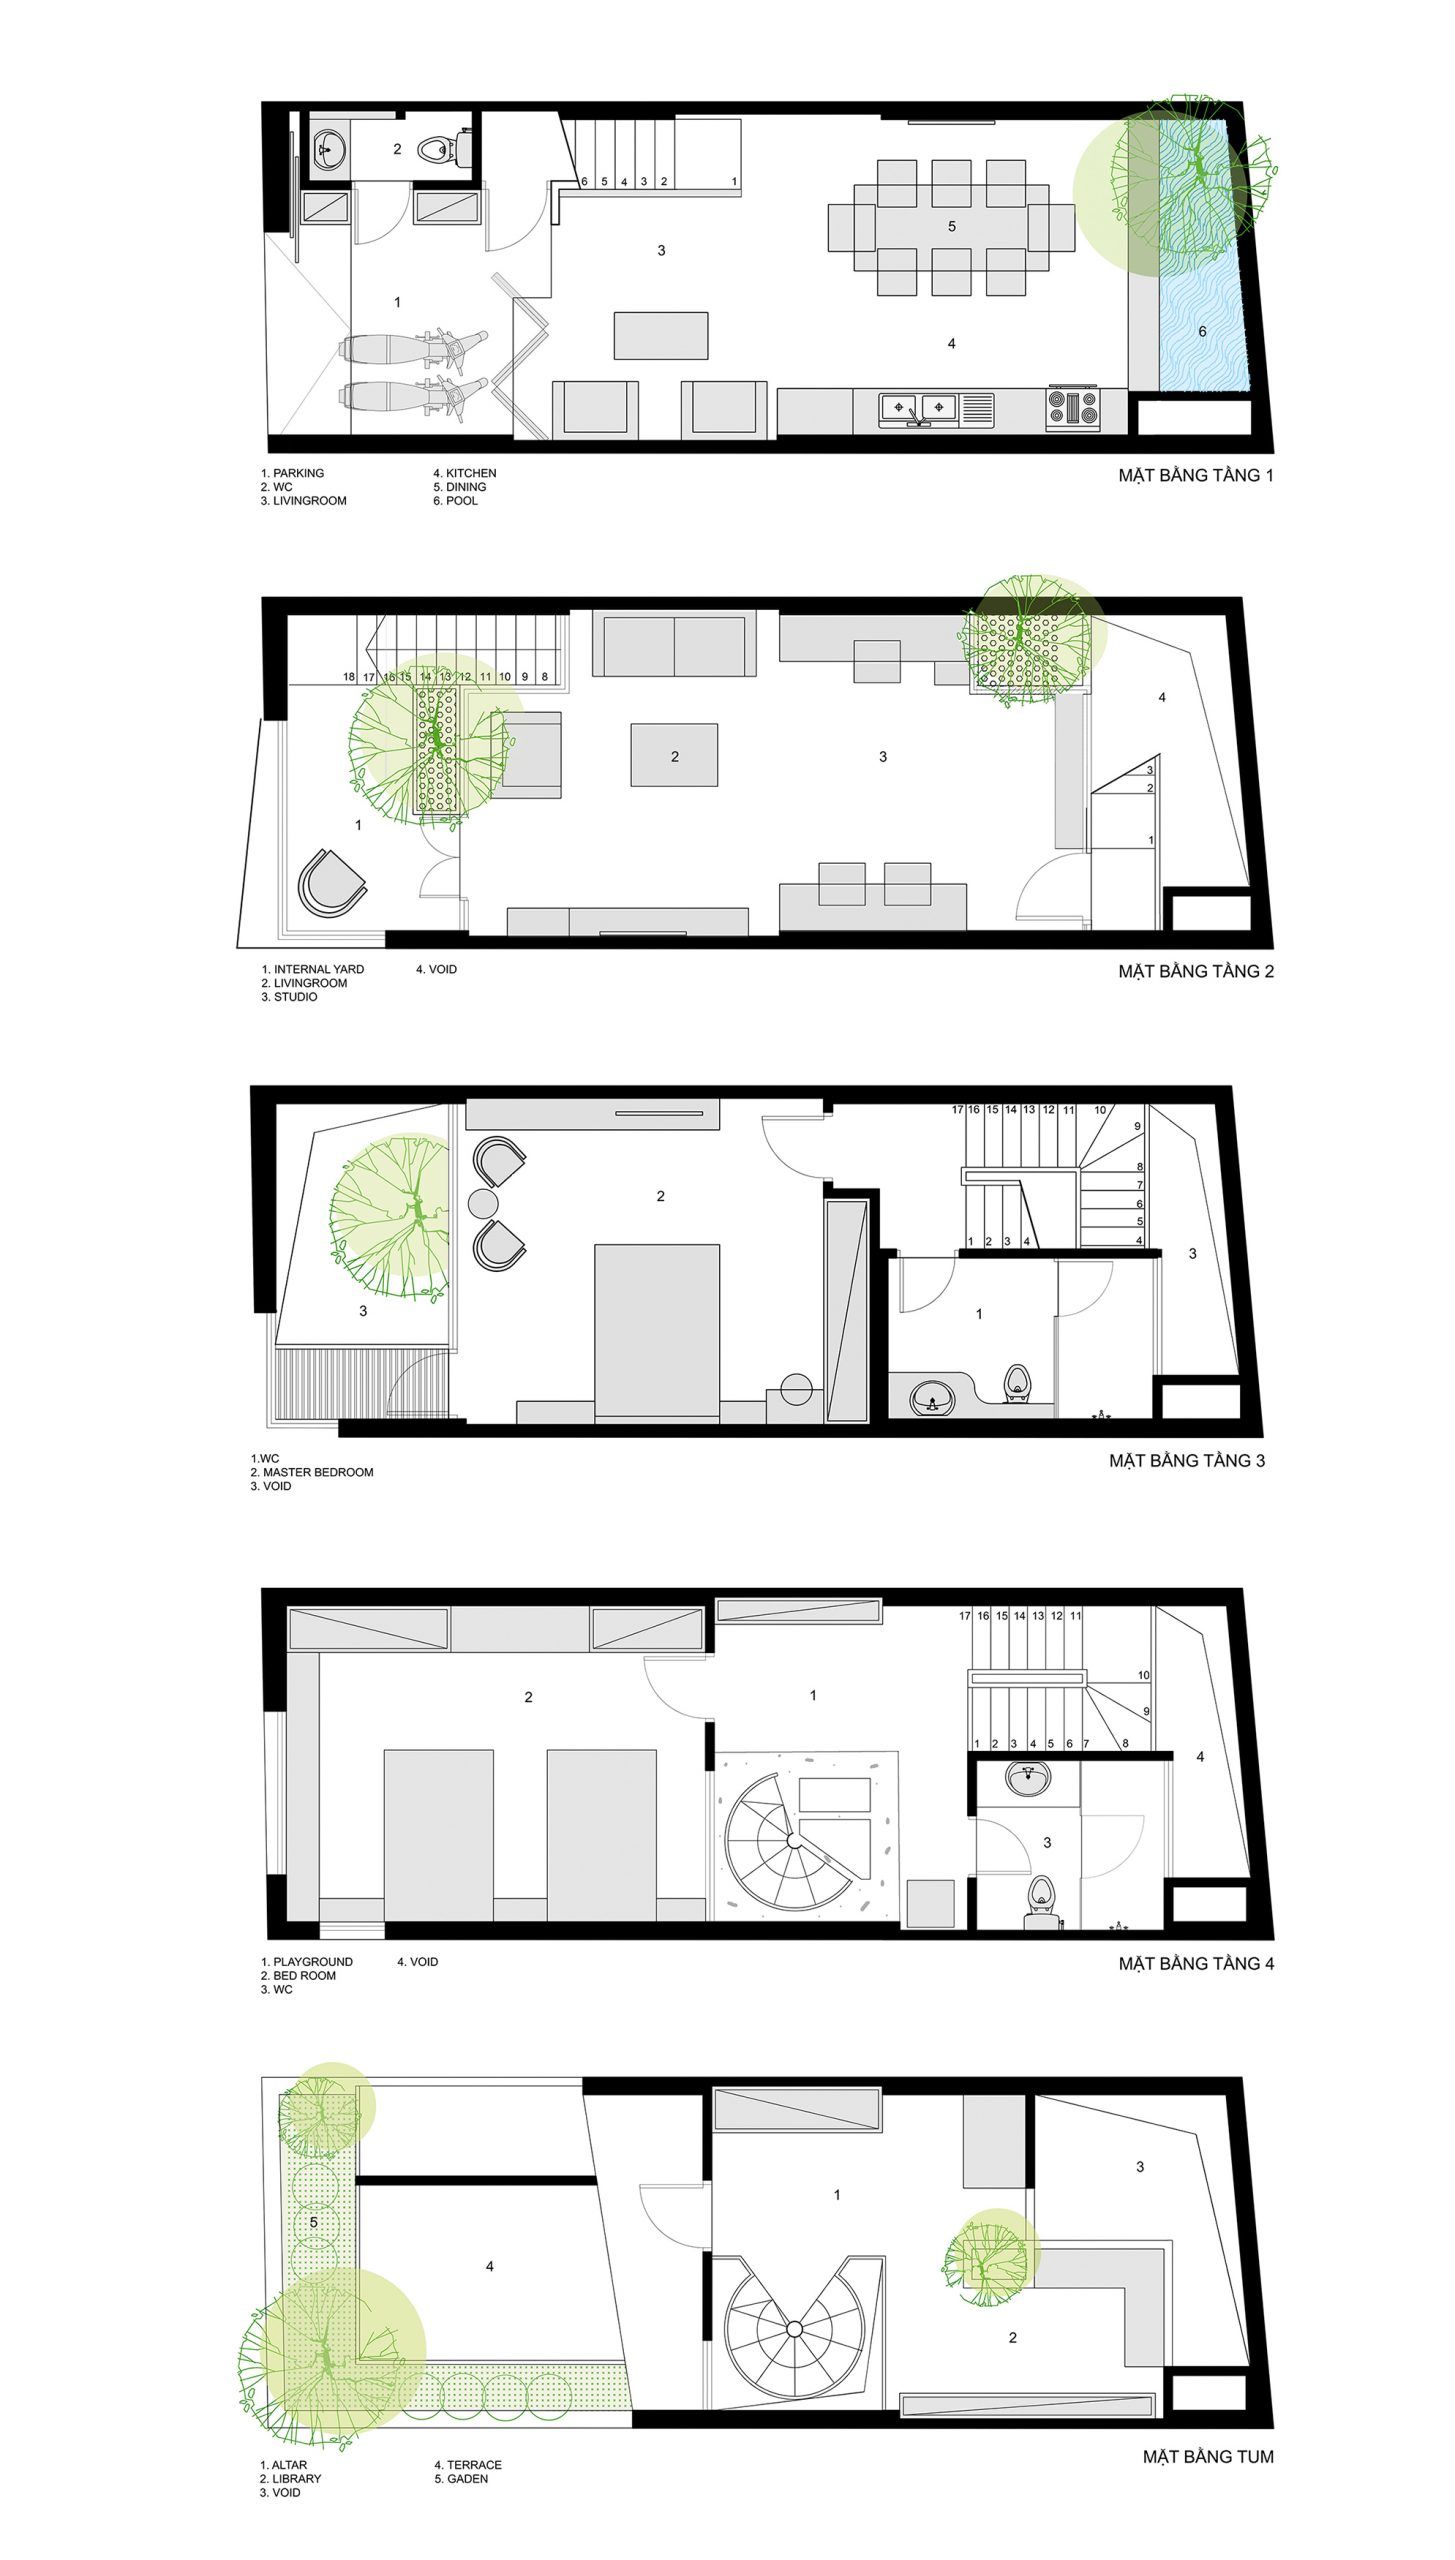 (cutting) EDGE house - Nhà vát góc trong ngõ nhỏ | ACCESS design lab